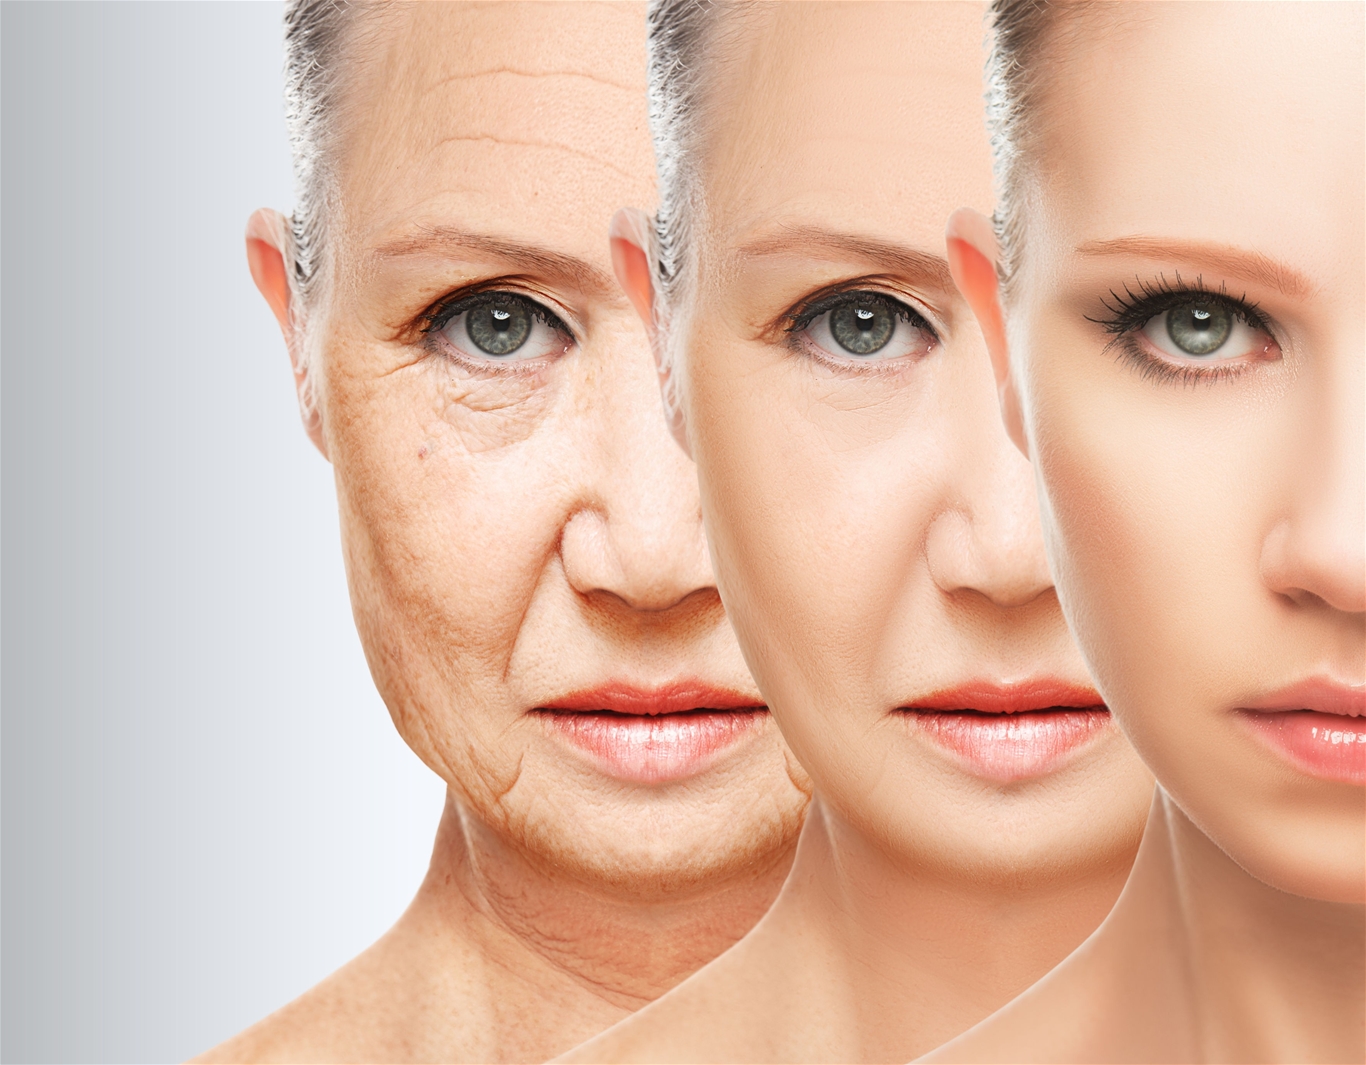 Làn da trong giai đoạn bị lão hóa rất mẫn cảm cần được lưu ý săn sóc kỹ càng bởi các loại viên uống làm săn chắc da, dưỡng da